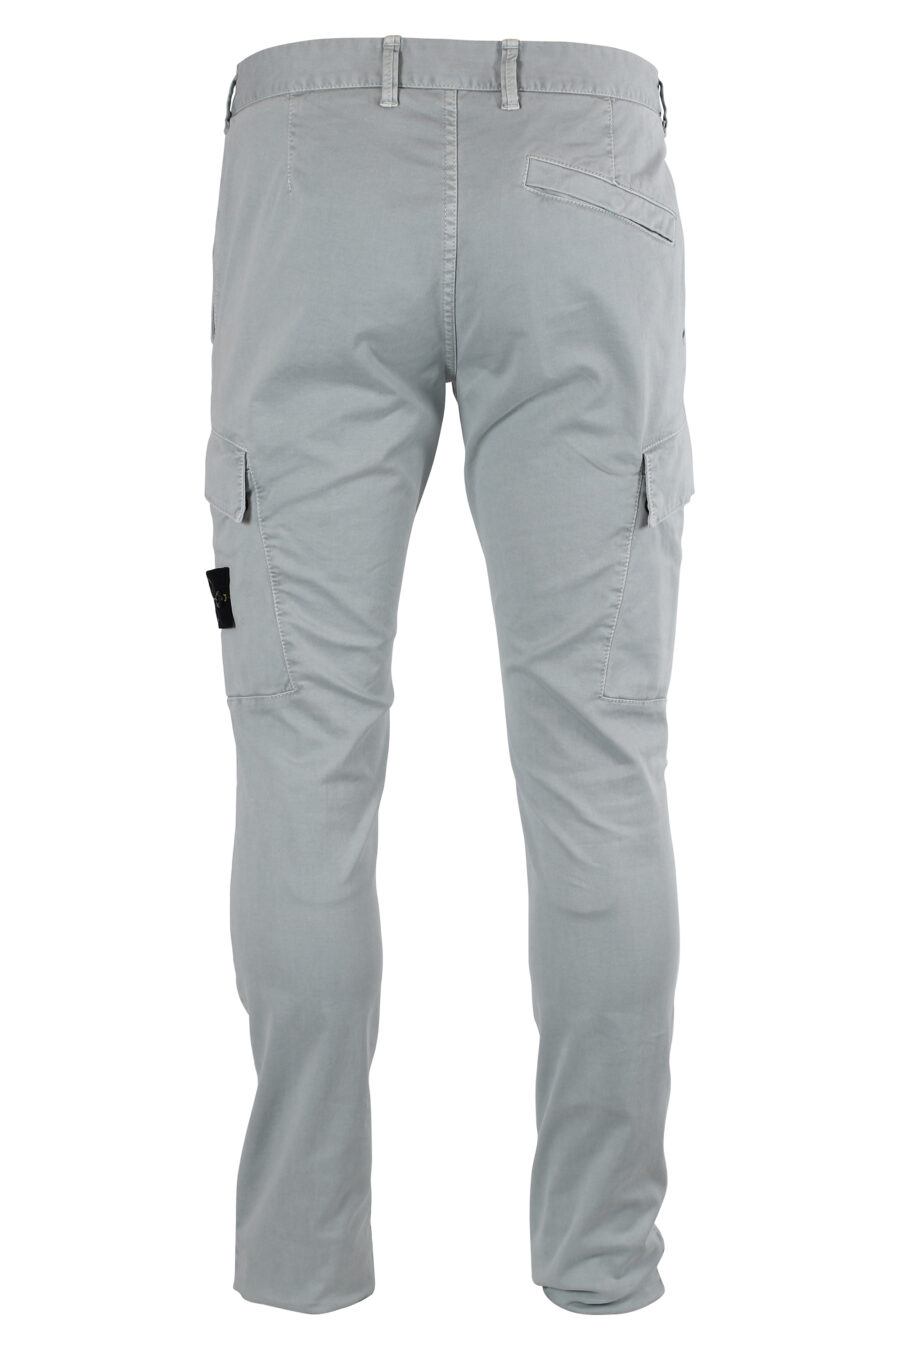 Pantalon gris clair avec poches et empiècement latéral - IMG 8336